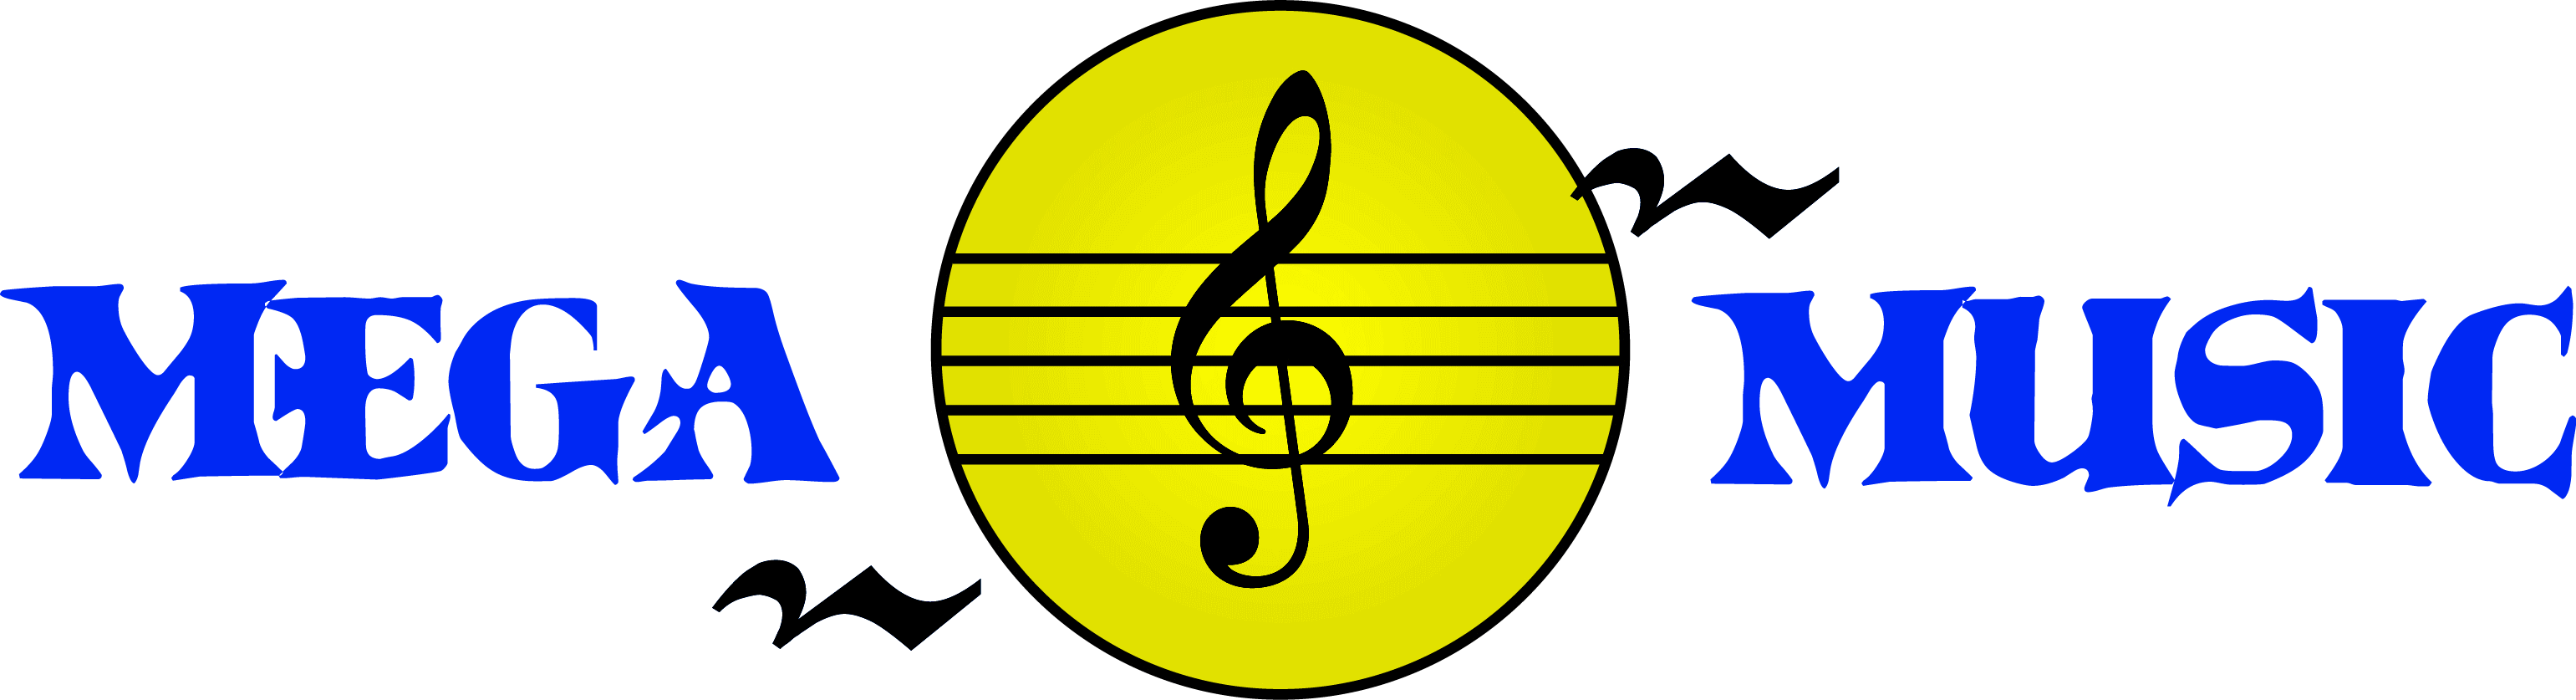 Mega Music Escola de Música